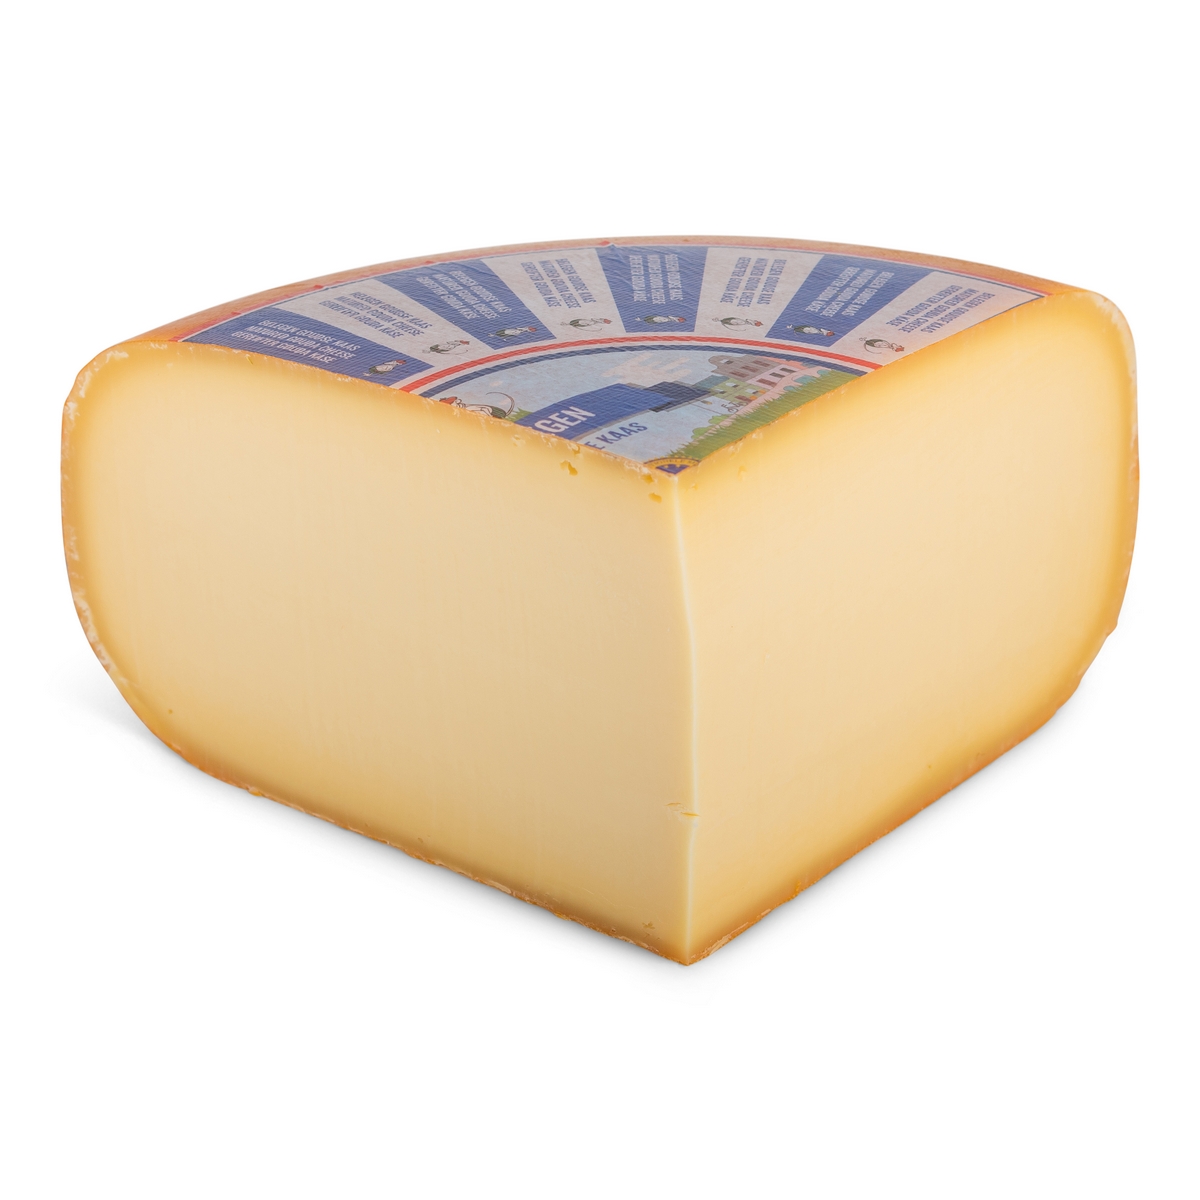 Bestel 3 kg belegen goudse kaas gemakkelijk en snel online. deze 48  kaas wordt snel thuisbezorgd. levering ...